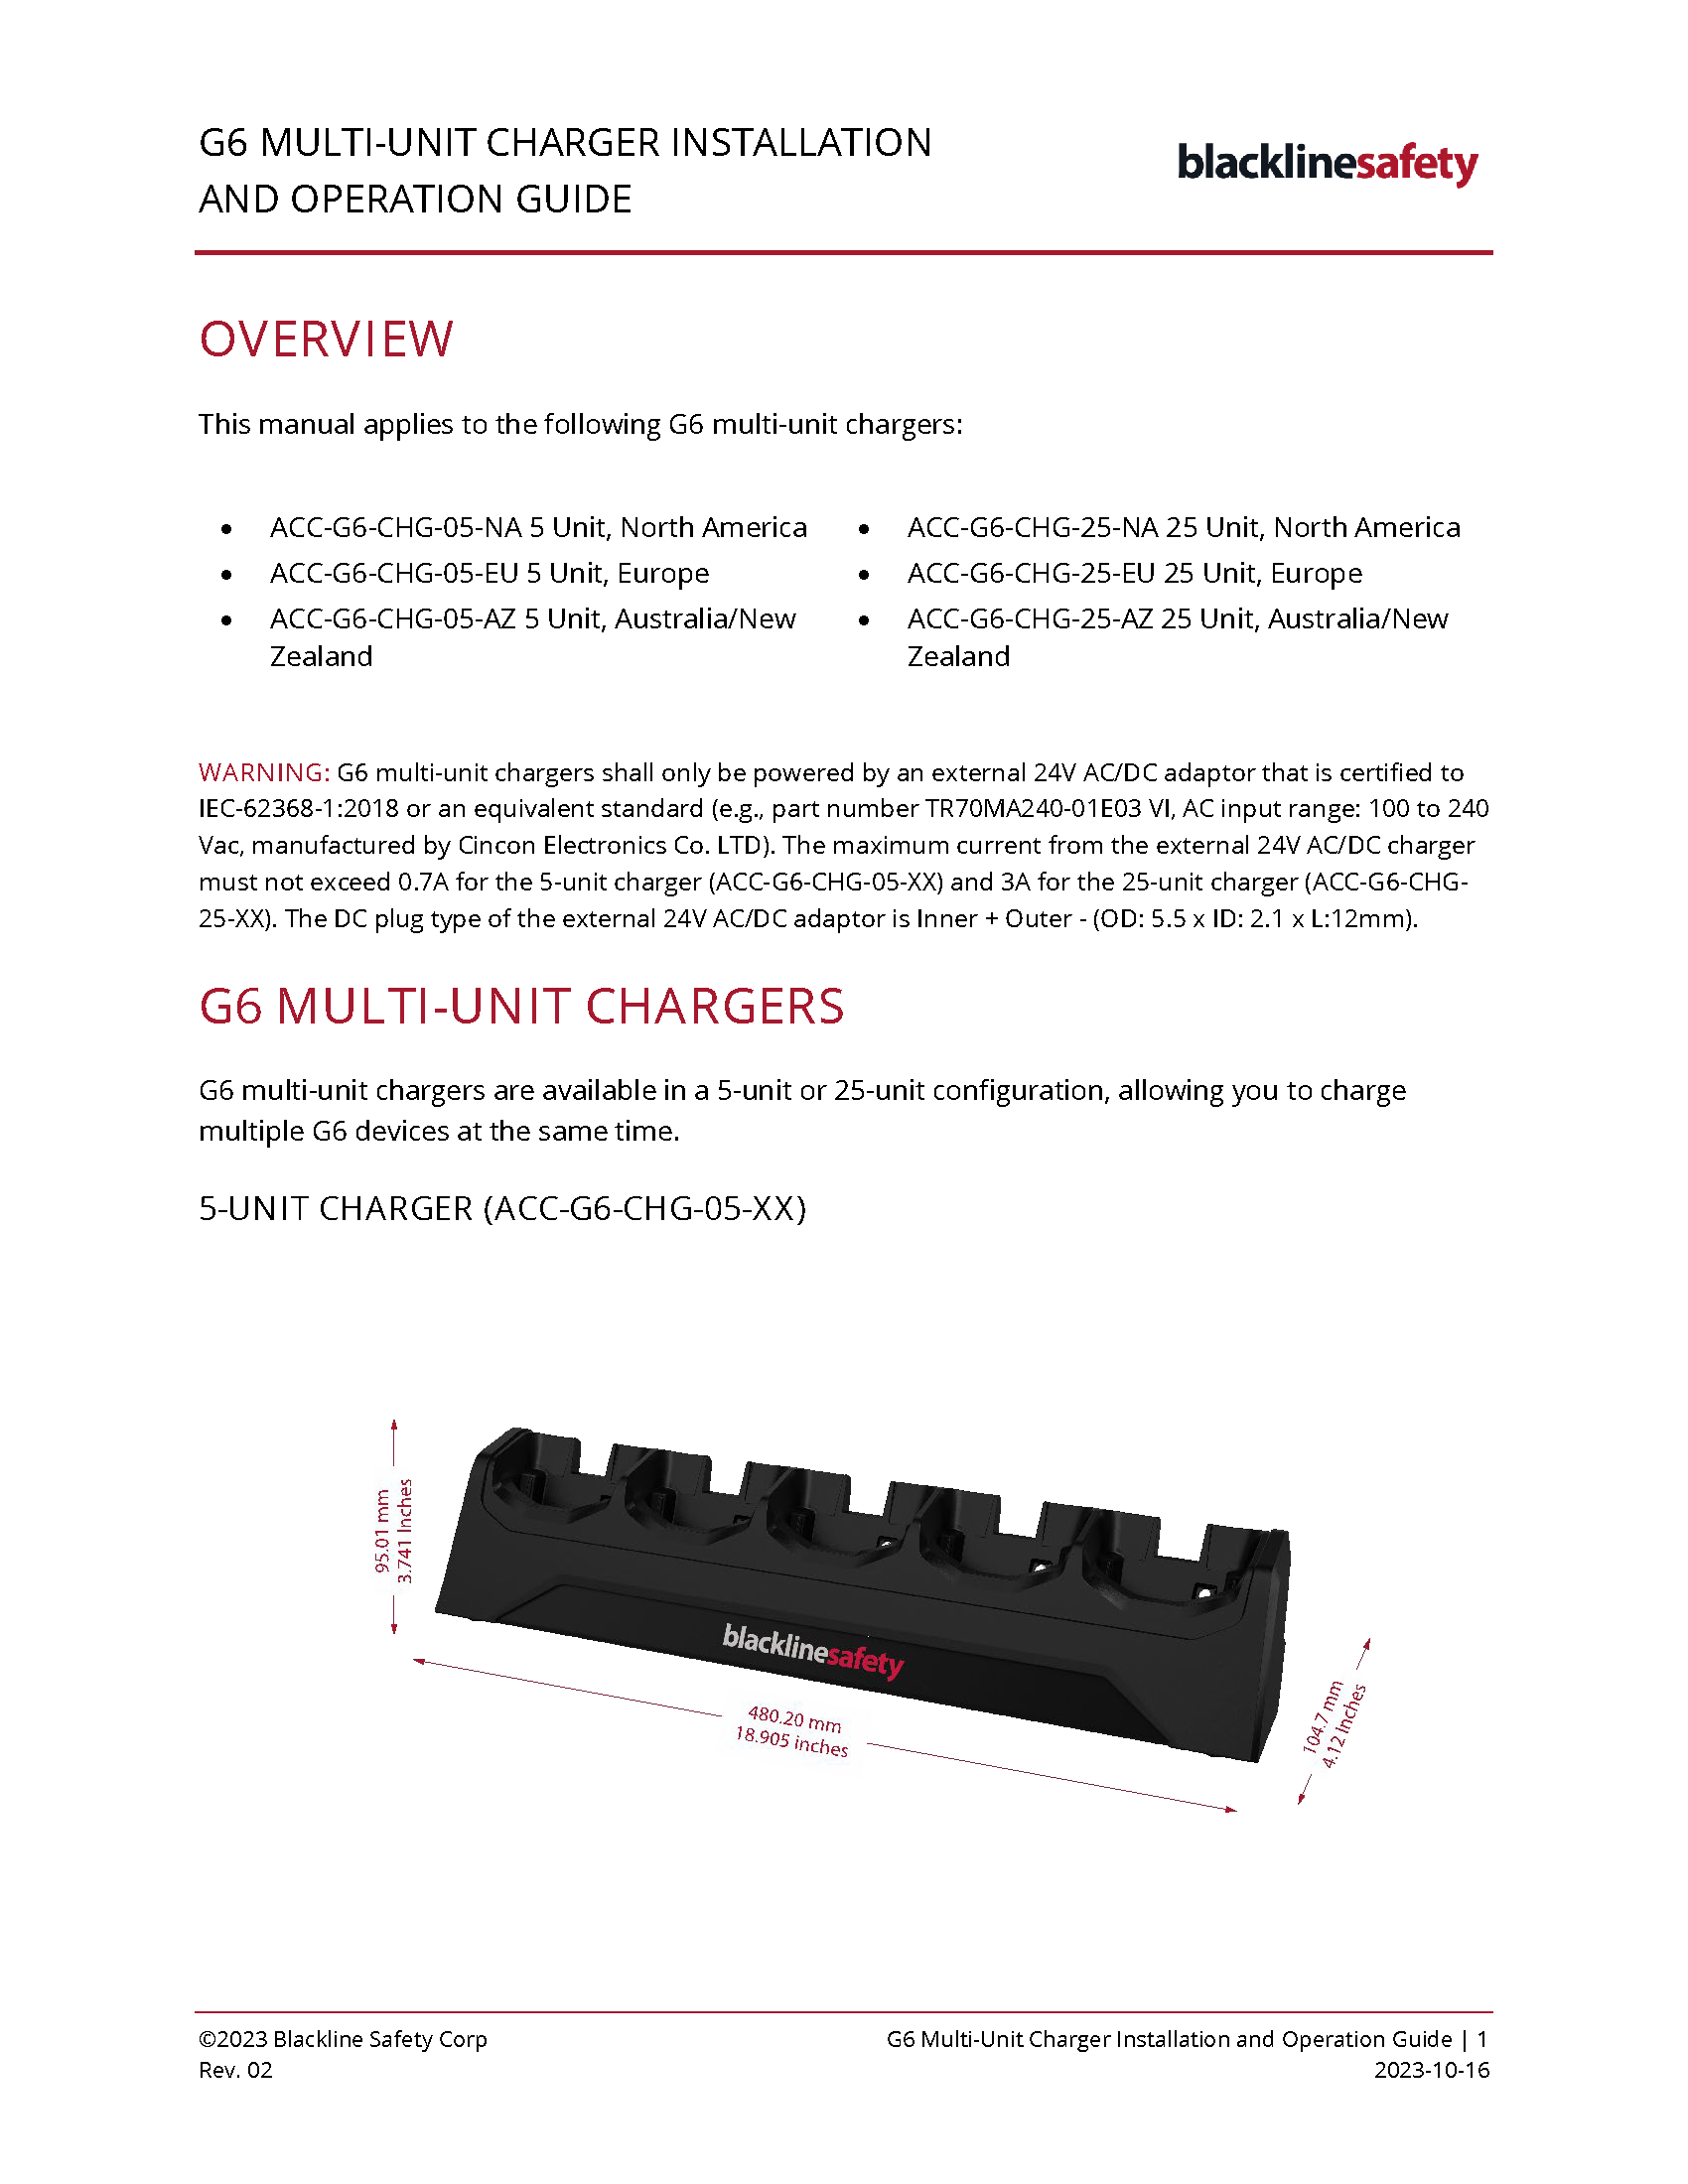 Guide d'installation et d'utilisation du chargeur multi-unités G6_Cover Page